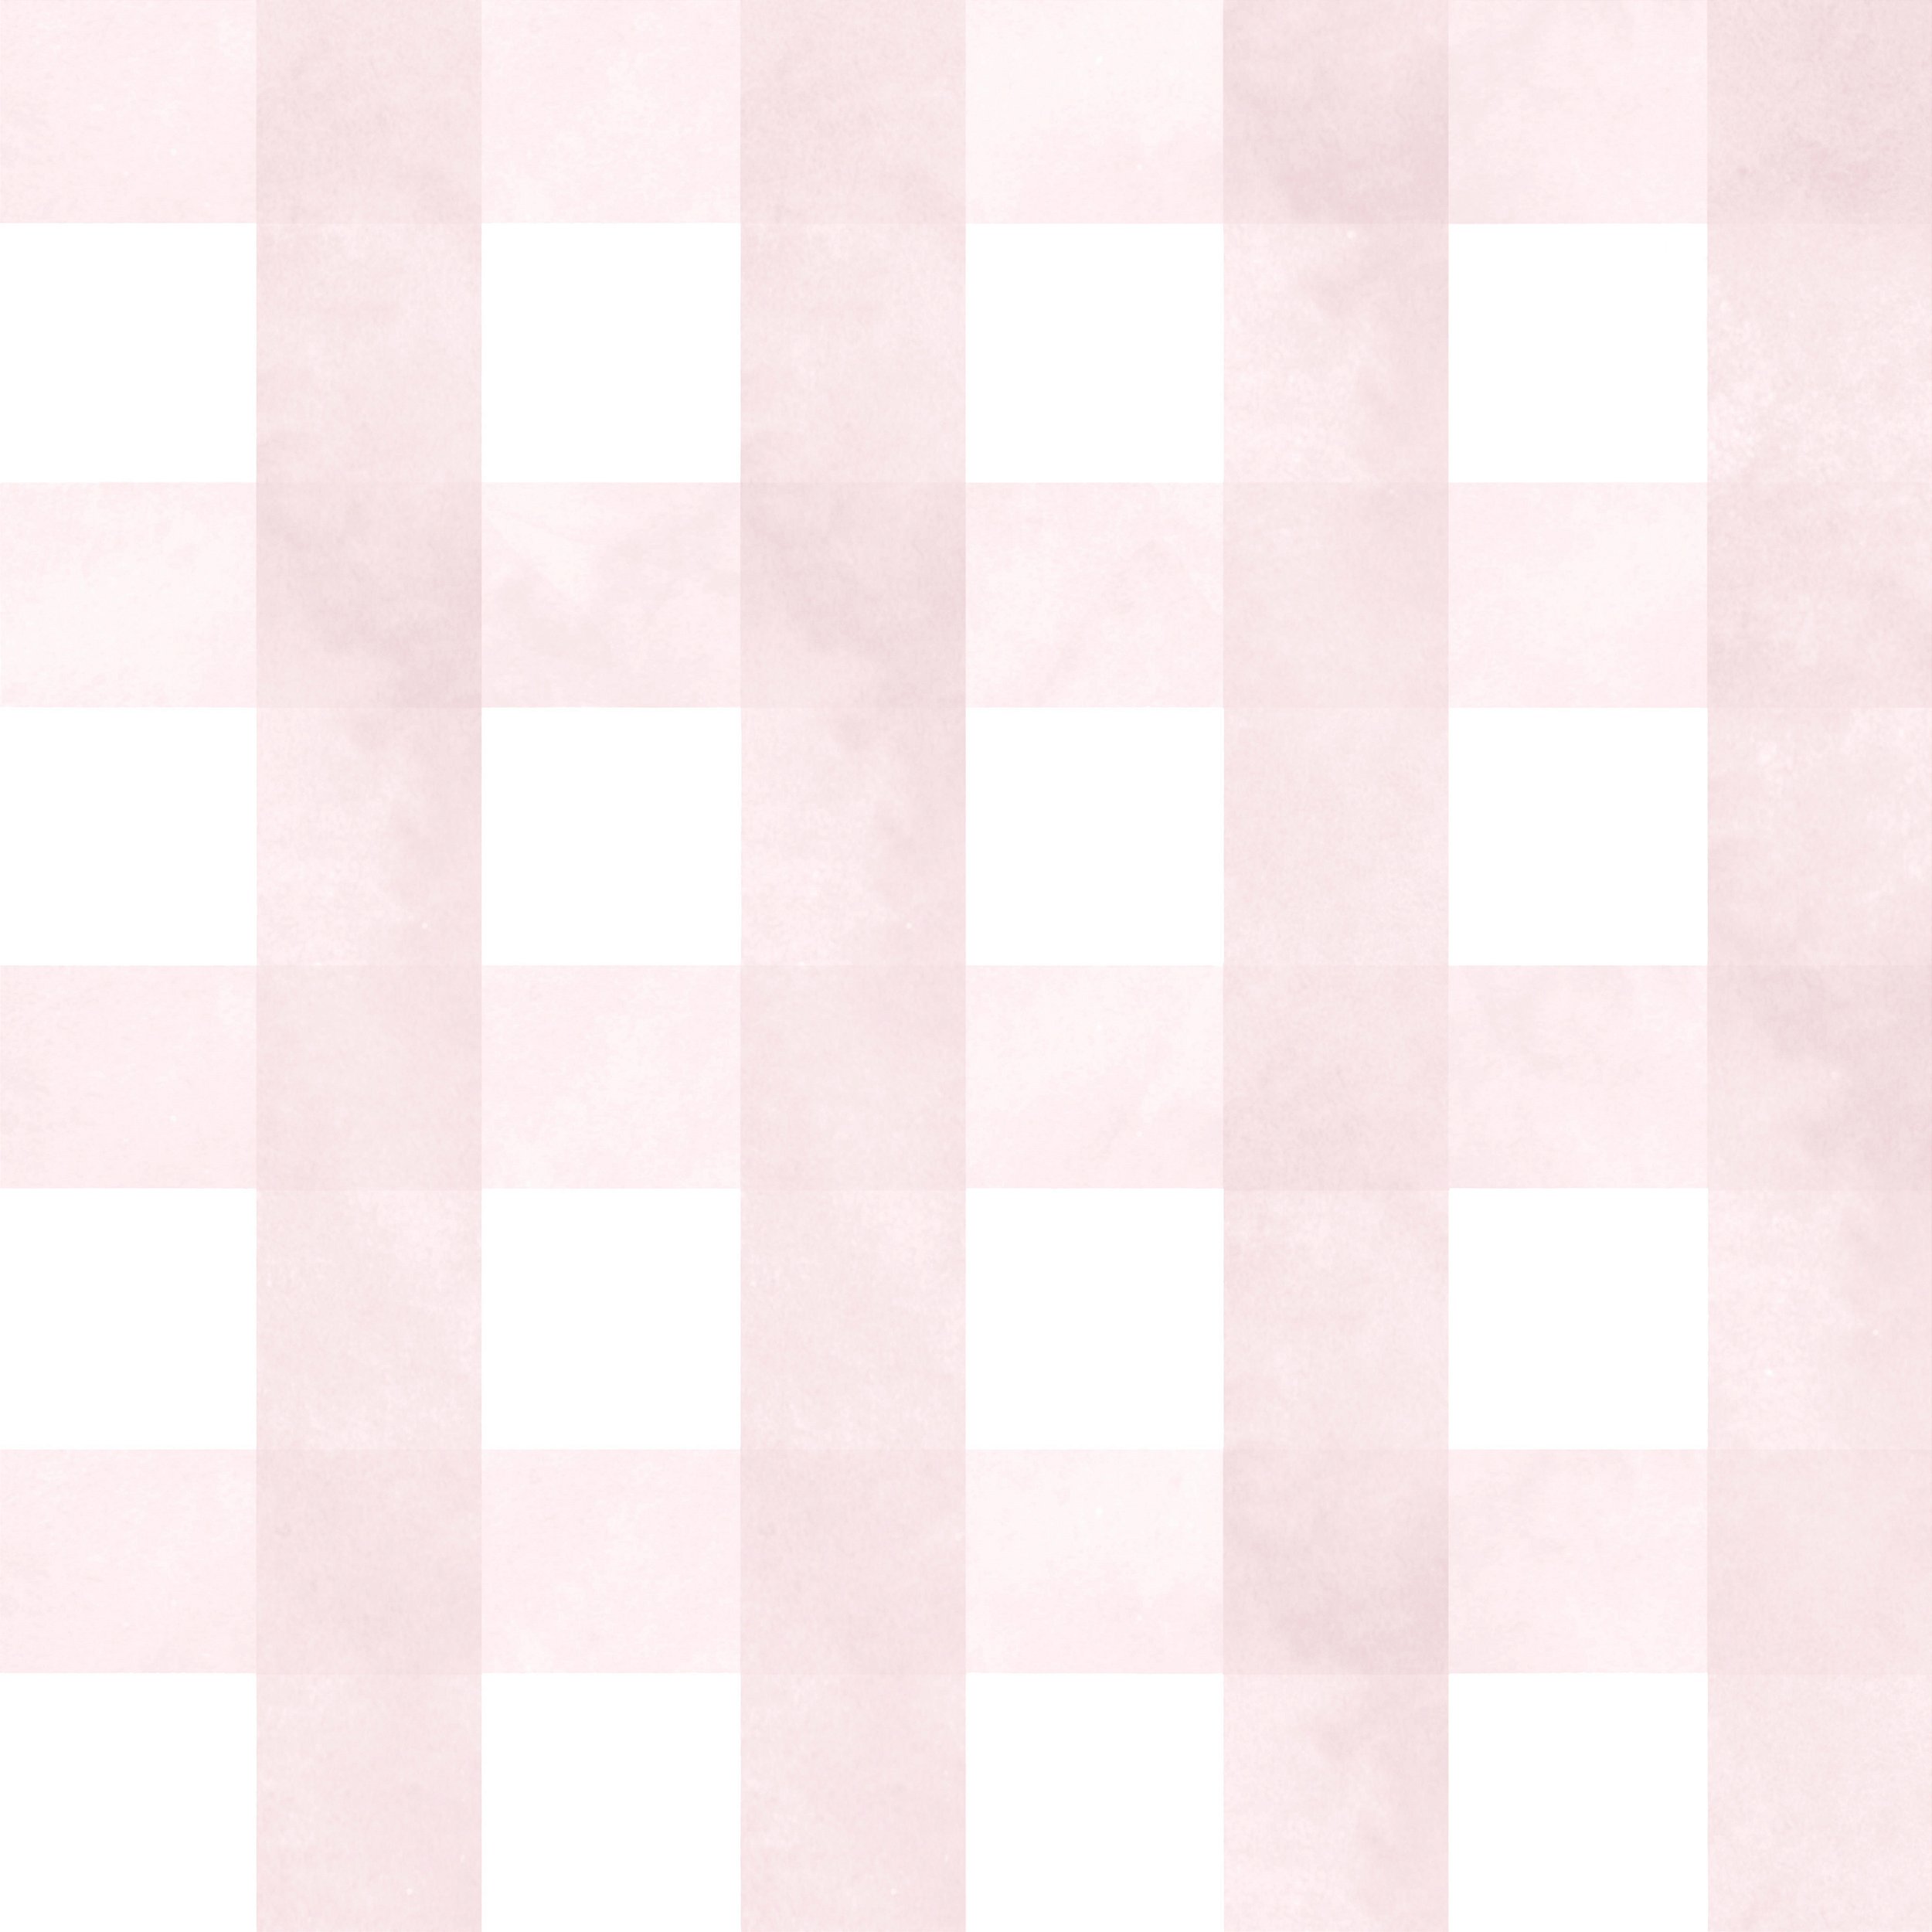 Plano de fundo xadrez xadrez preto e rosa, perfeito para o pano de